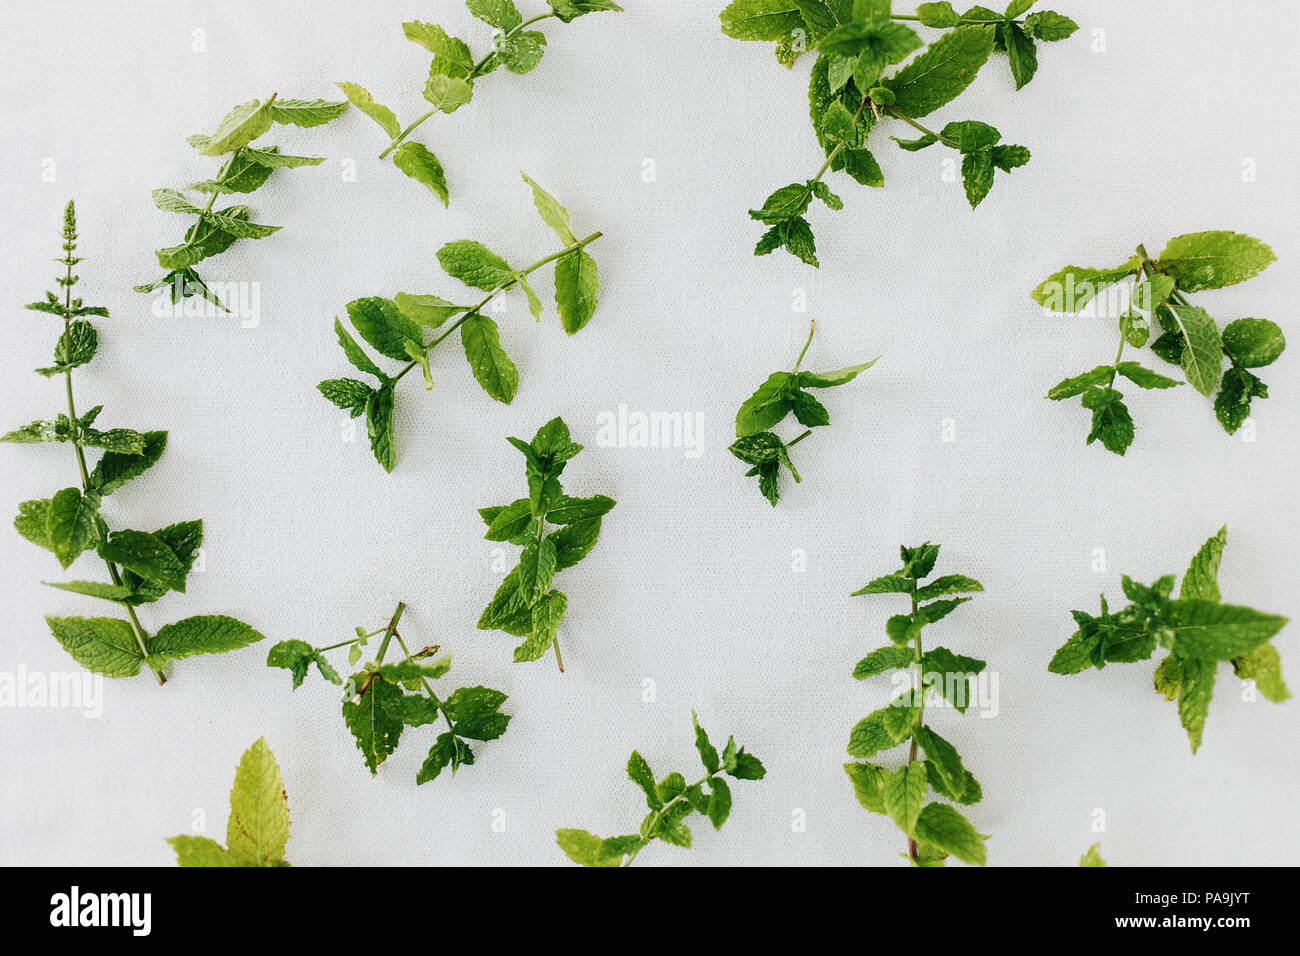 Pfefferminze Blätter frisch geschnitten und auf weißem Hintergrund  verstreut. Erhaltung Pfefferminz Aroma durch natürliche Luft-trocknen.  Direkt oberhalb, isoliert Stockfotografie - Alamy